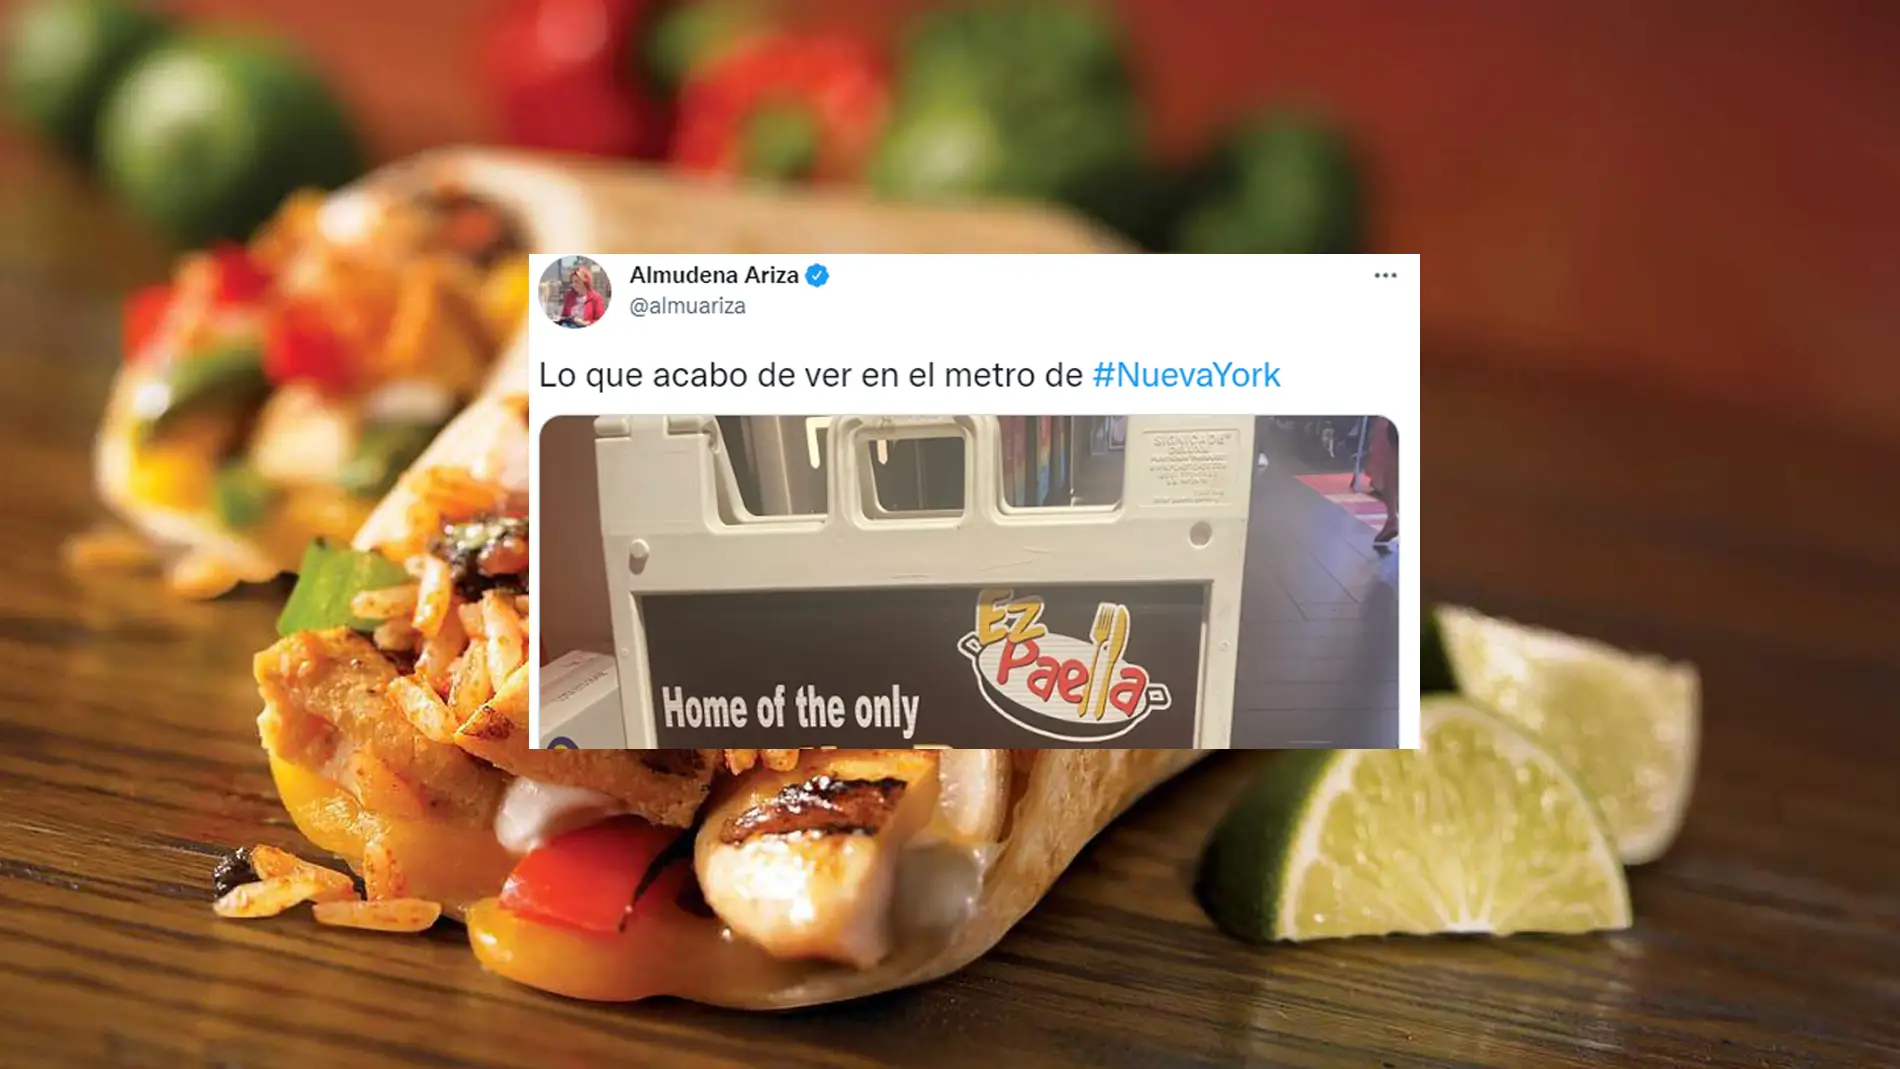 "El burrito de paella": El plato más raro que ha visto Almudena Ariza en un metro de Nueva York